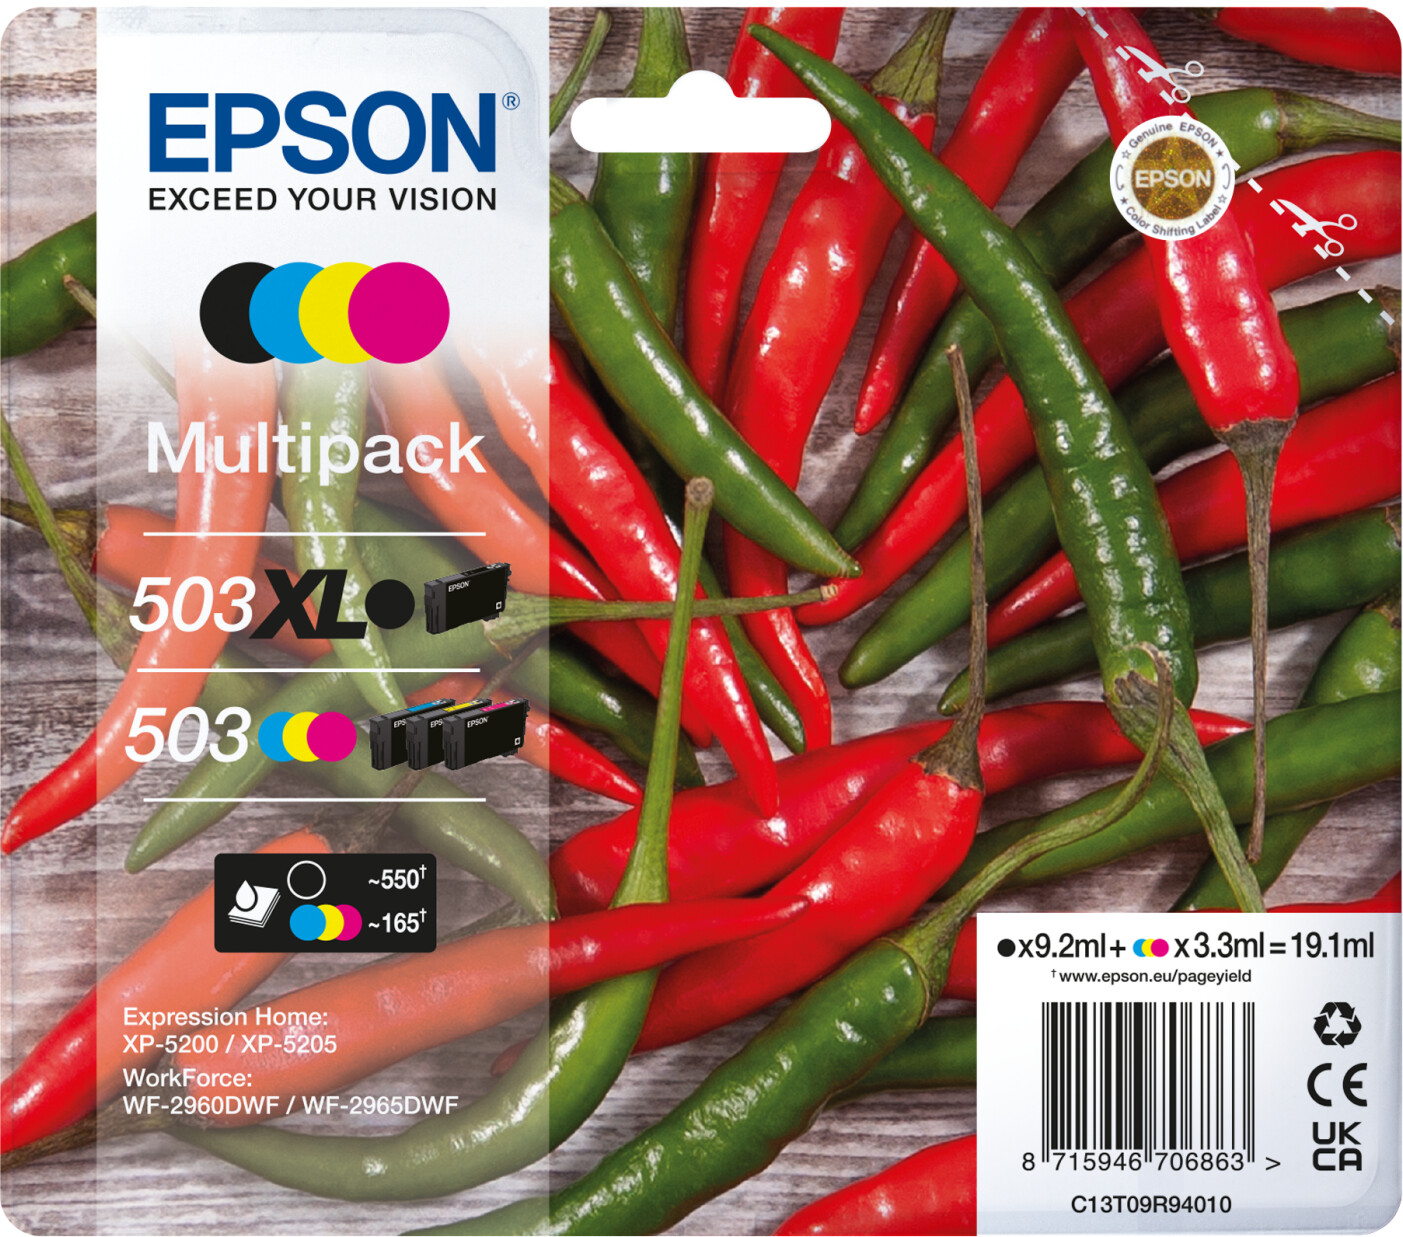 Epson 604 XL - Noir, rouge, bleu, jaune - Compatible